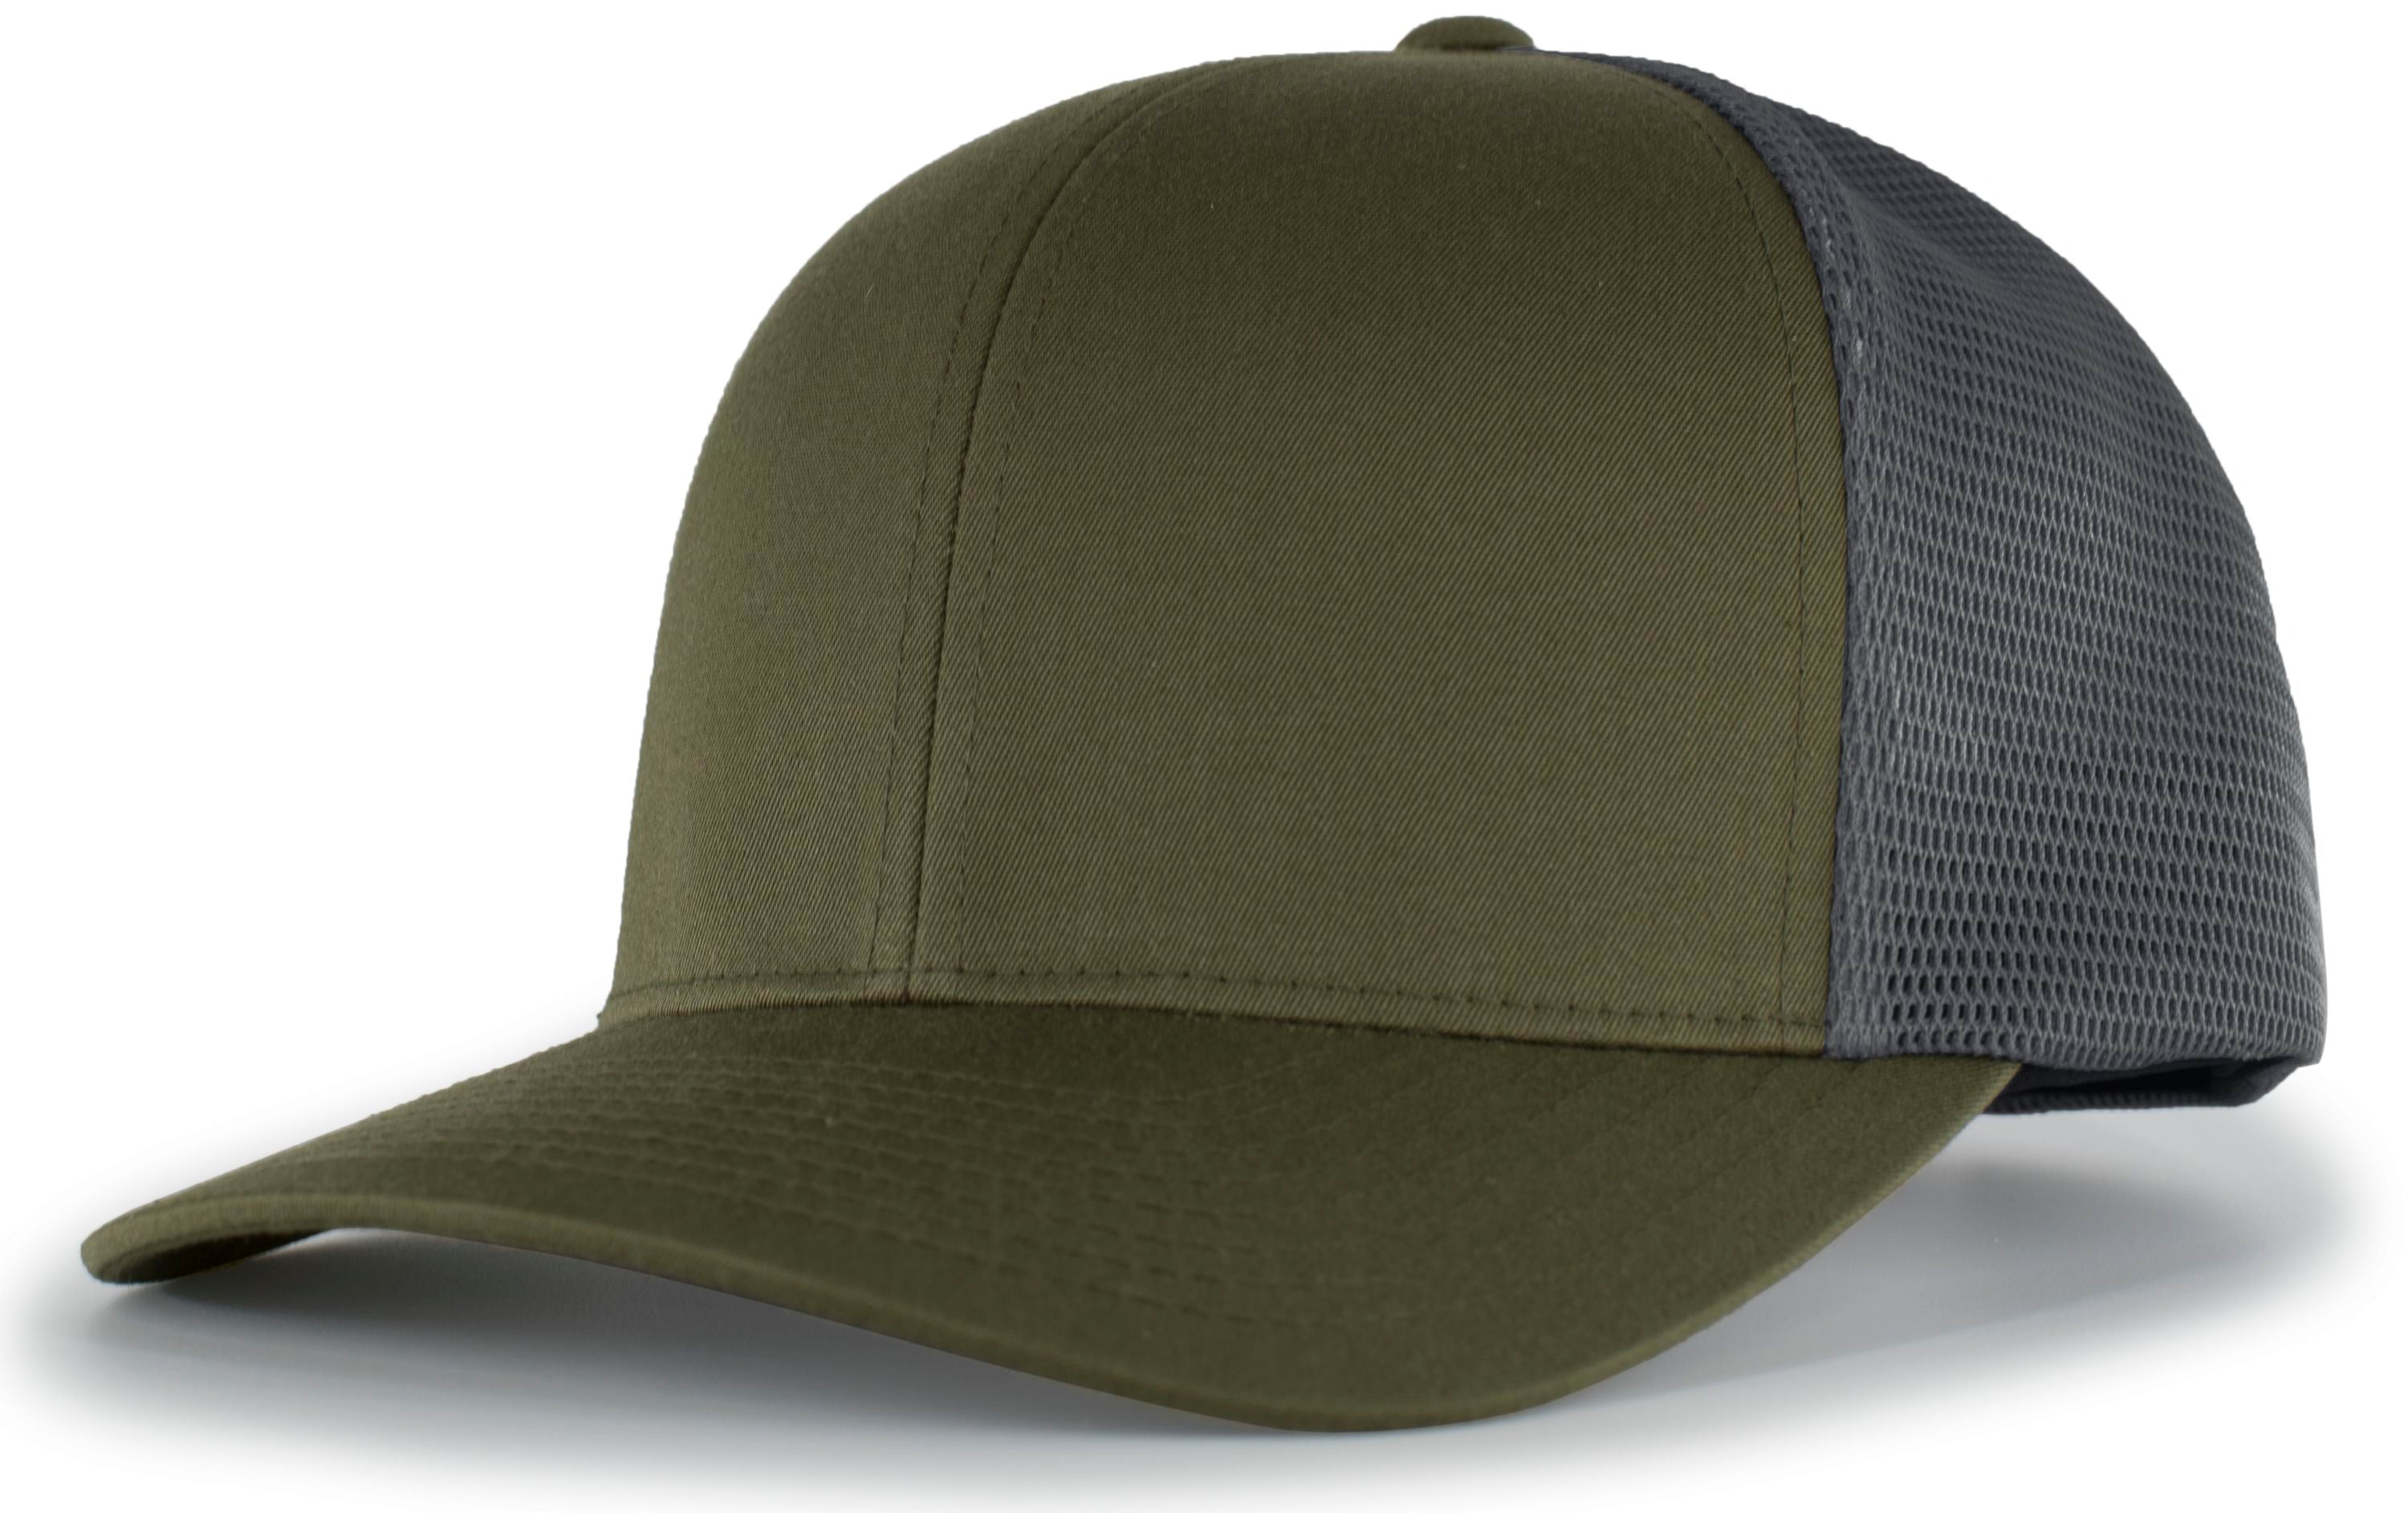 Pacific Headwear Trucker Flexfit® Snapback Cap